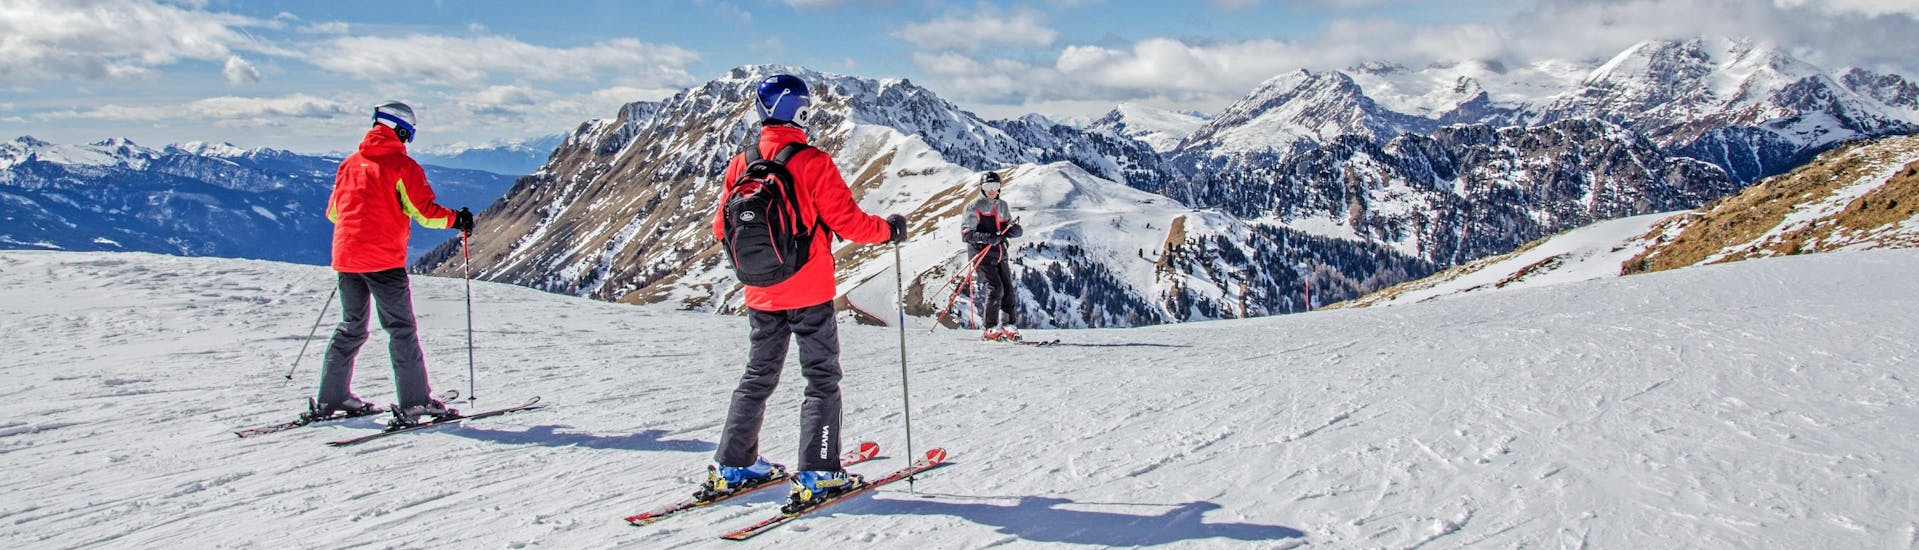 Des skieurs au sommet des montagnes qui surplombent la station de ski.